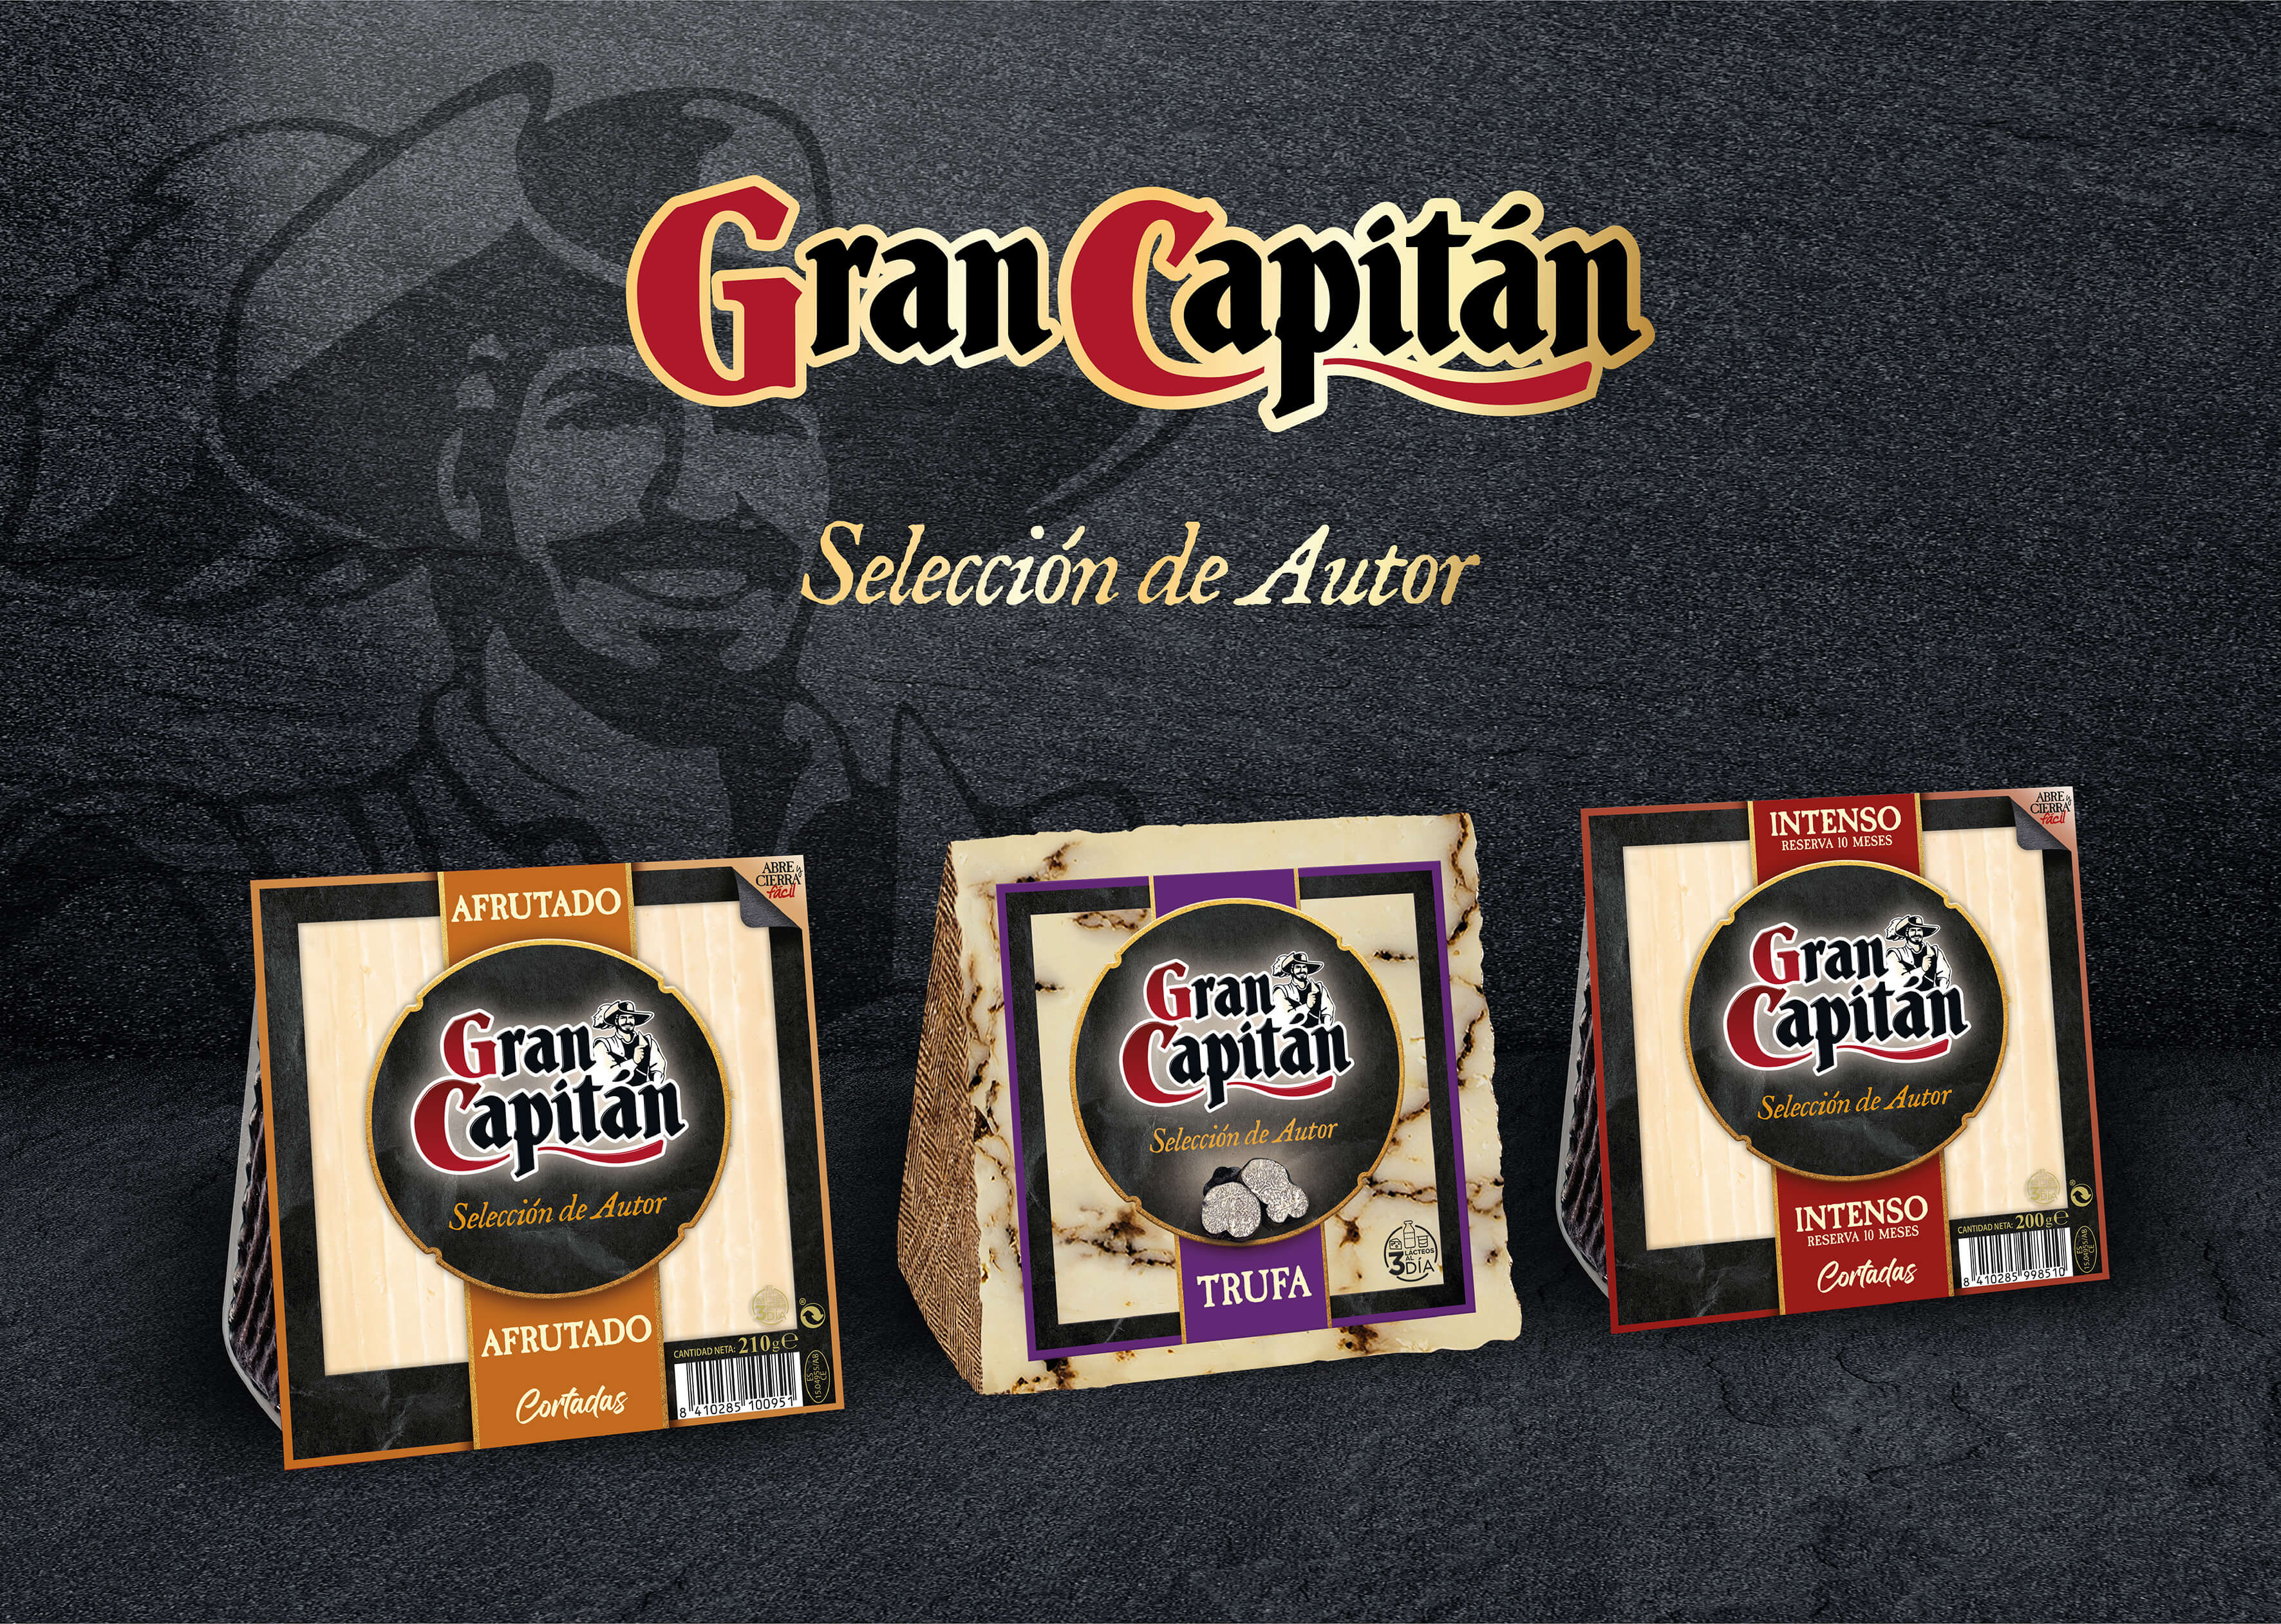 Gran Capitán lanza su nueva gama de quesos Seleción de Autor con tres sabores: Trufa, Afrutado e Intenso